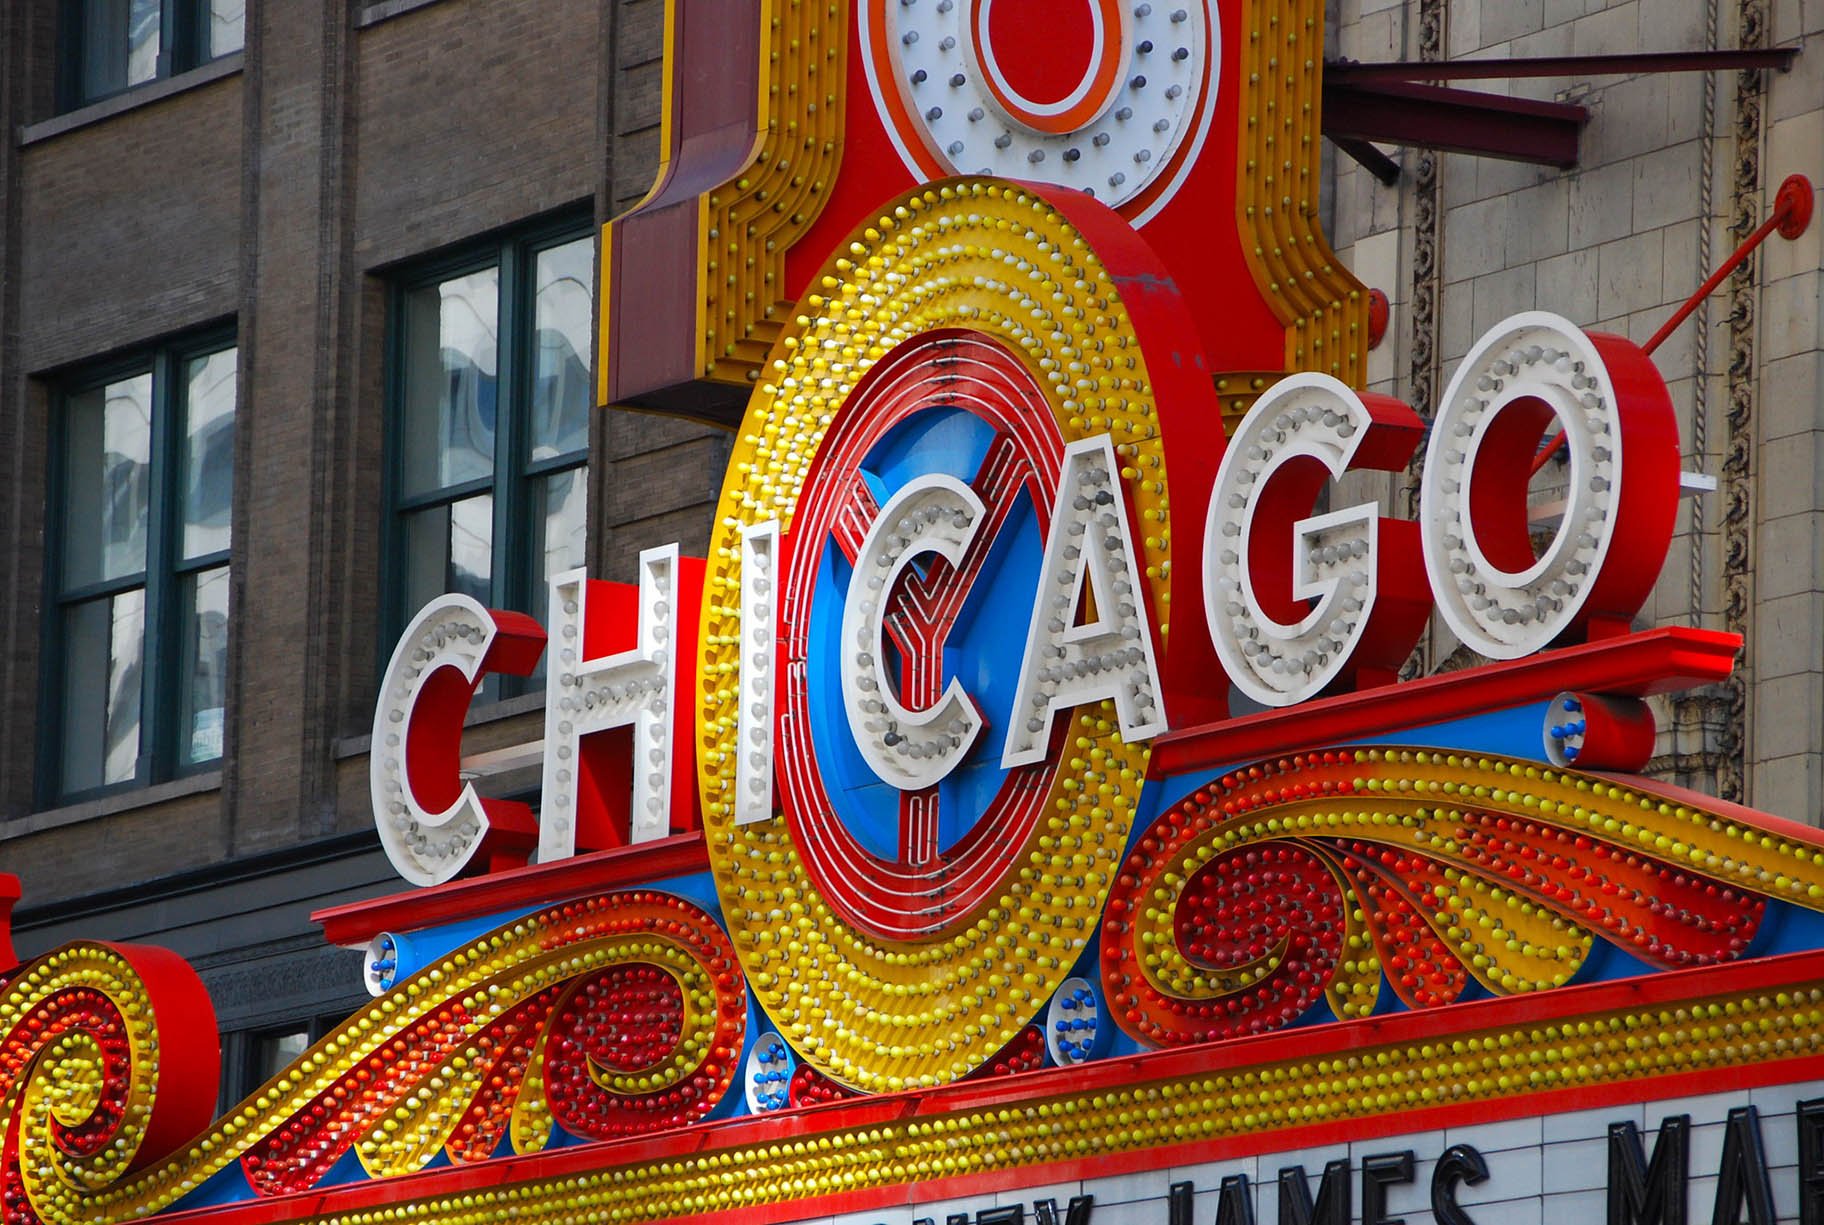 Chicago Theatre marquee (Adam Fagen / Flickr)